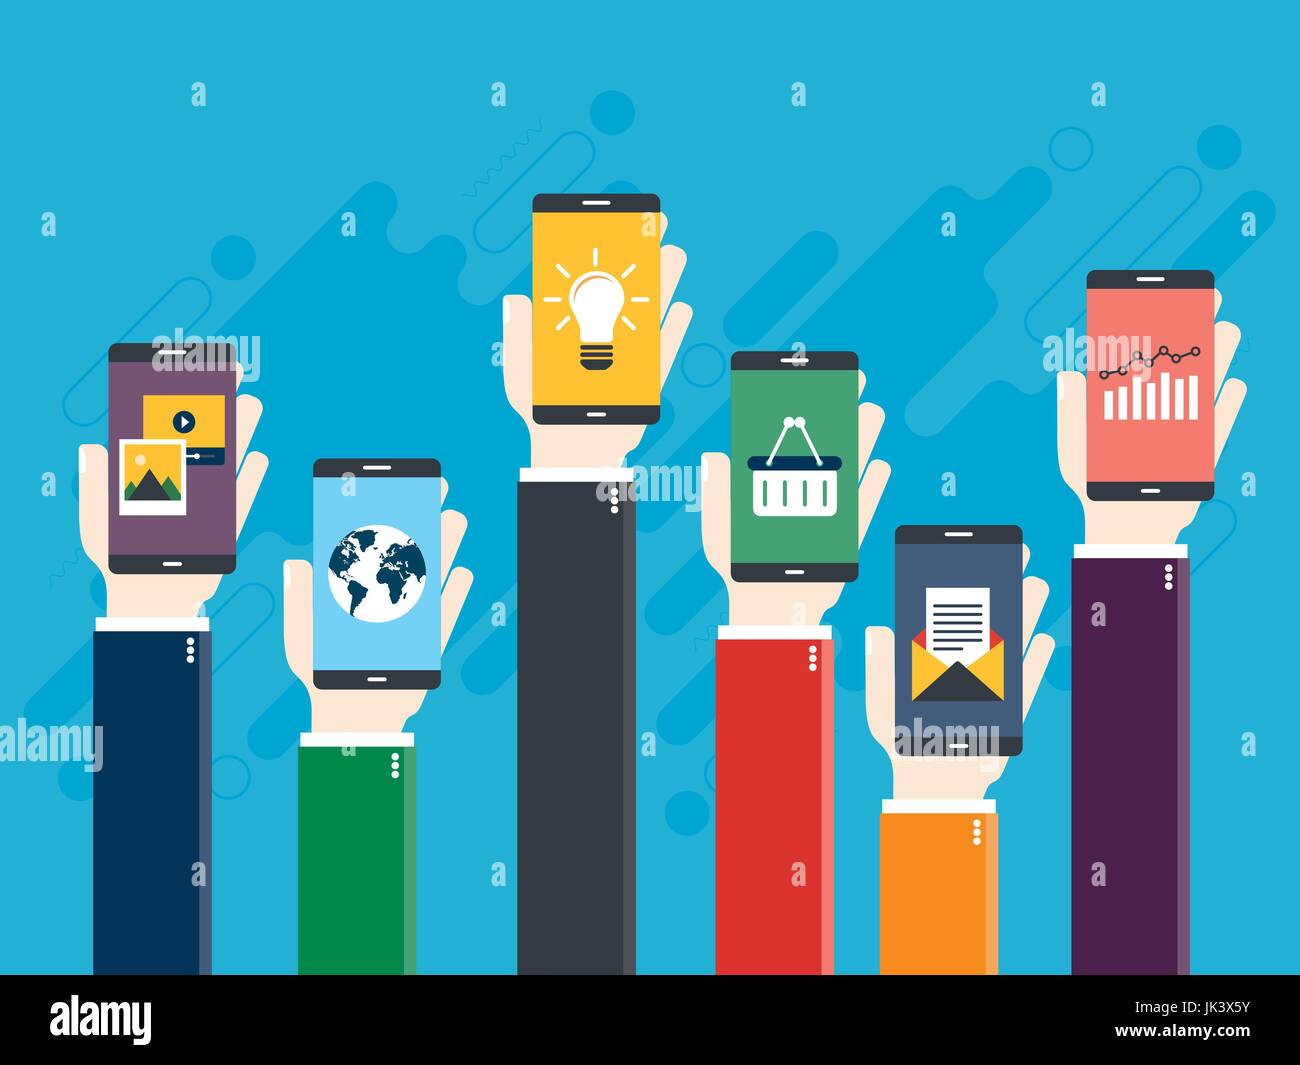 Illustrazione Vettoriale di alzare le mani tenendo i telefoni intelligenti con icone di e-commerce grafico, finanza, e-mail, foto e video, mappa del mondo e lampada. Conc Illustrazione Vettoriale